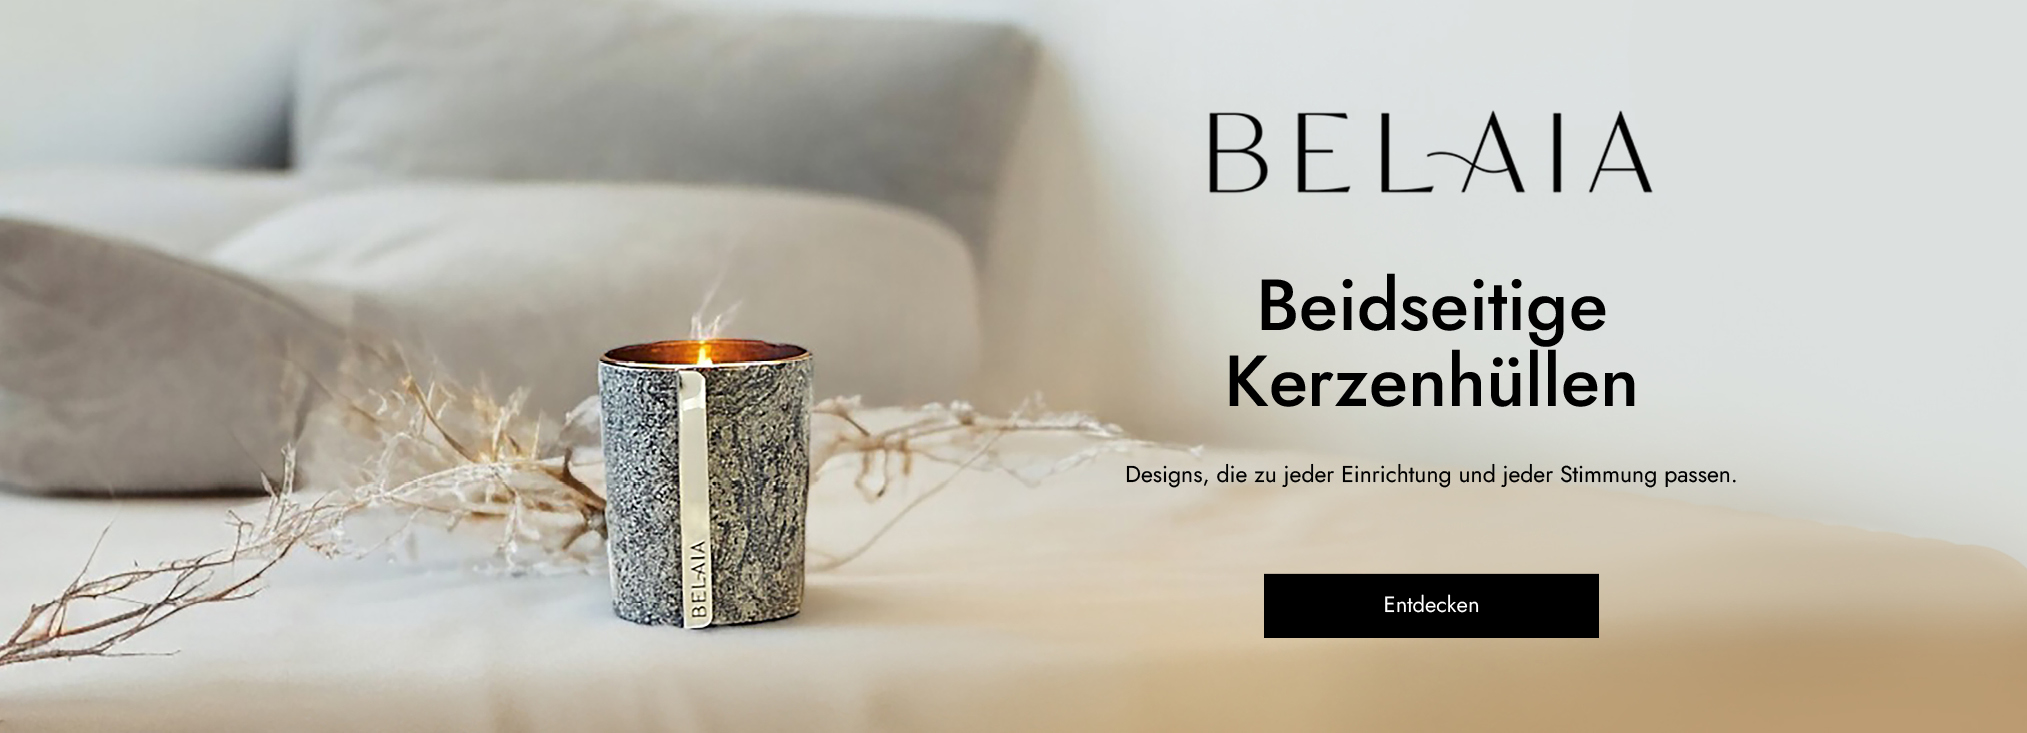 BELAIA_home fragrances